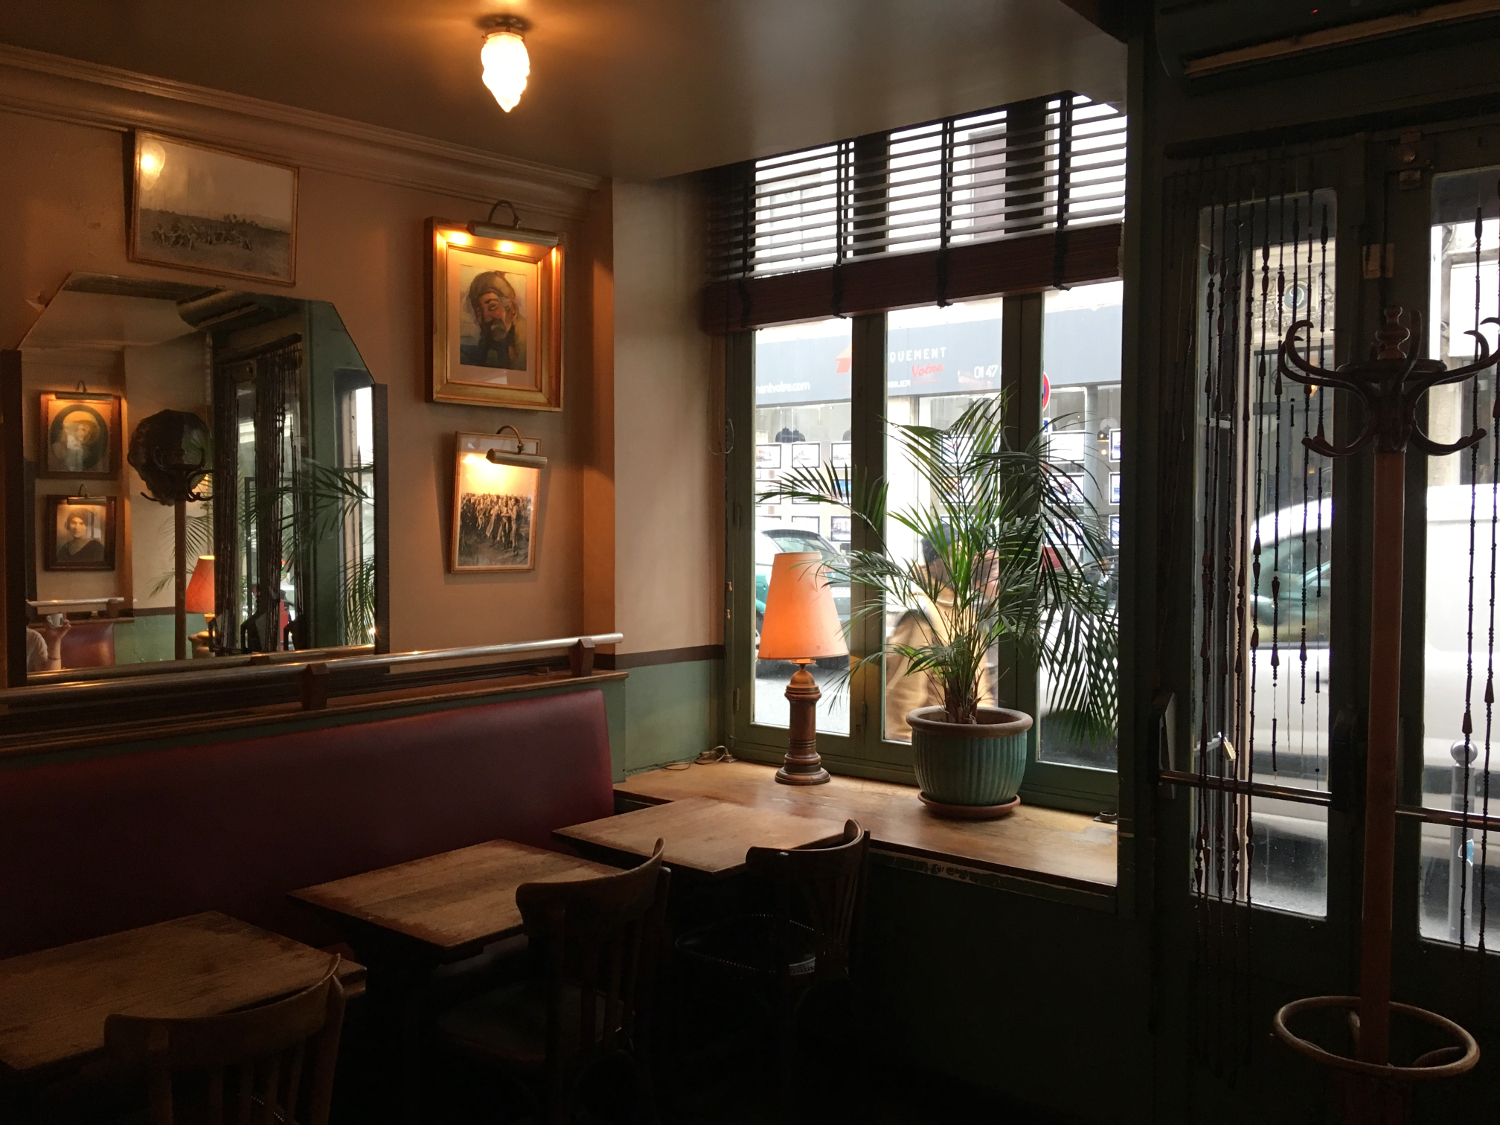 rocaille-blog-paris-cafe-de-lindustrie-restaurant-where-to-eat-4